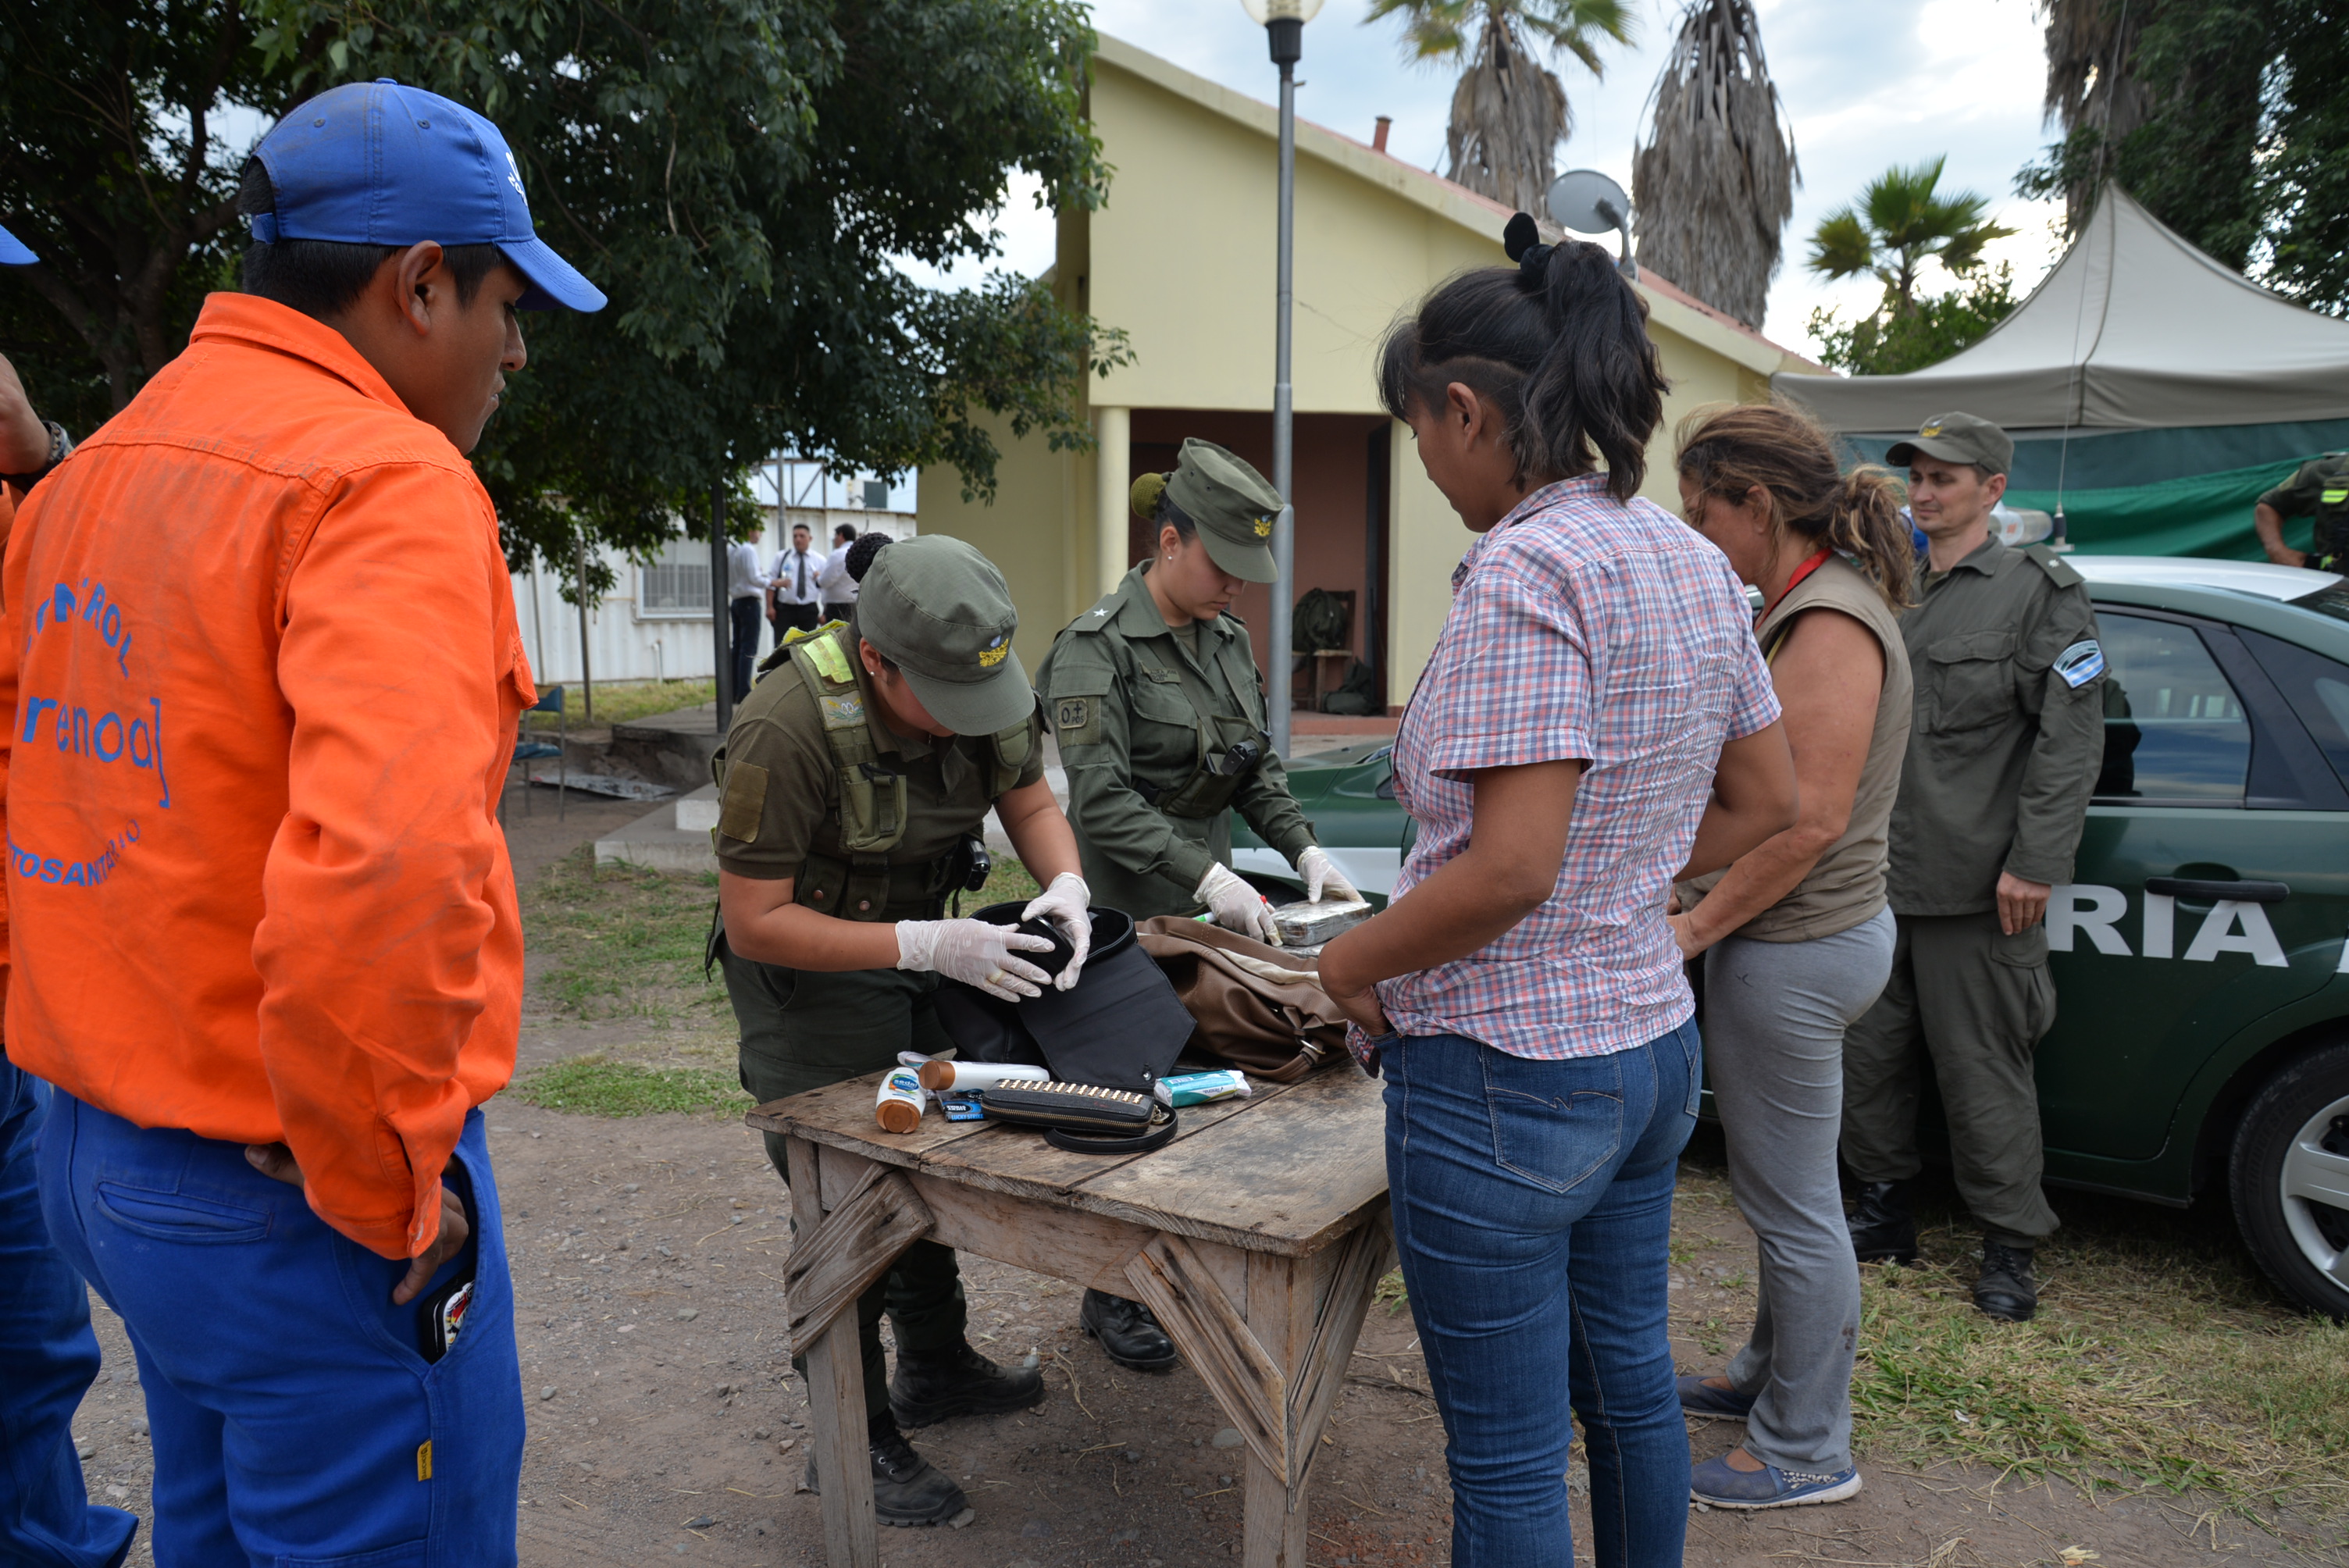 La detección del estupefaciente se produjo durante un control vehicular en la localidad de Pampa Blanca. - Imagen: Gendarmería Nacional.